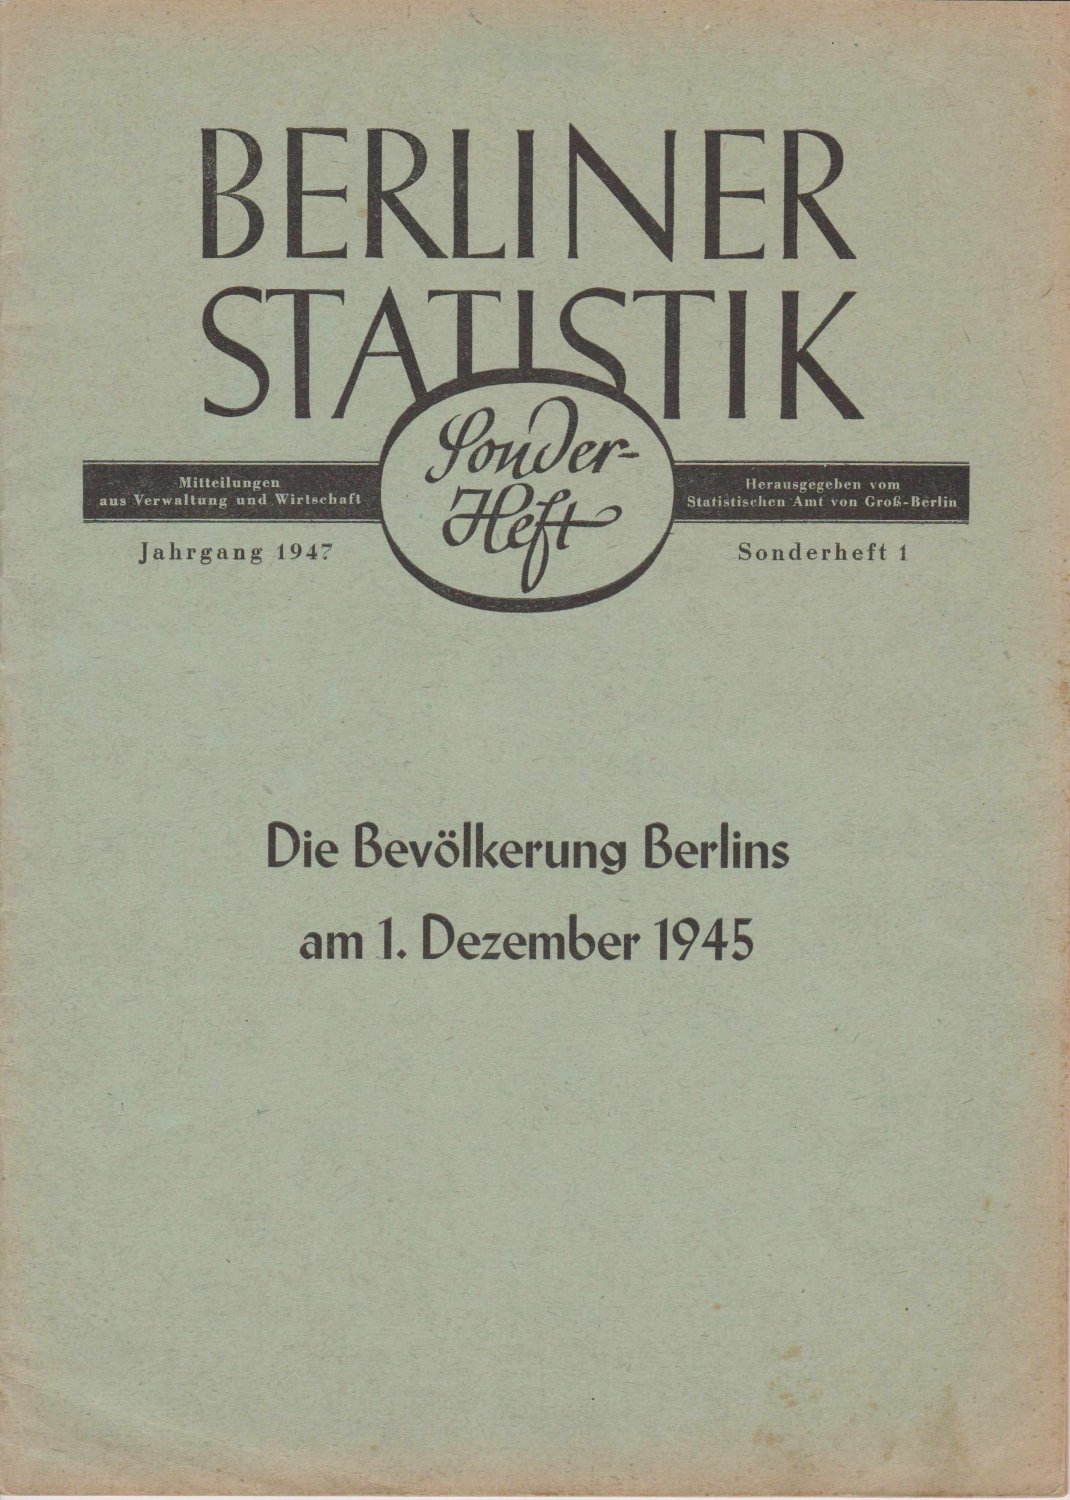 Statistisches Amt von Groß-Berlin (Hrsg.):  Berliner Statistik. Sonderheft 1 / 1947. Die Bevölkerung Berlins am 1. Dezember 1945. 